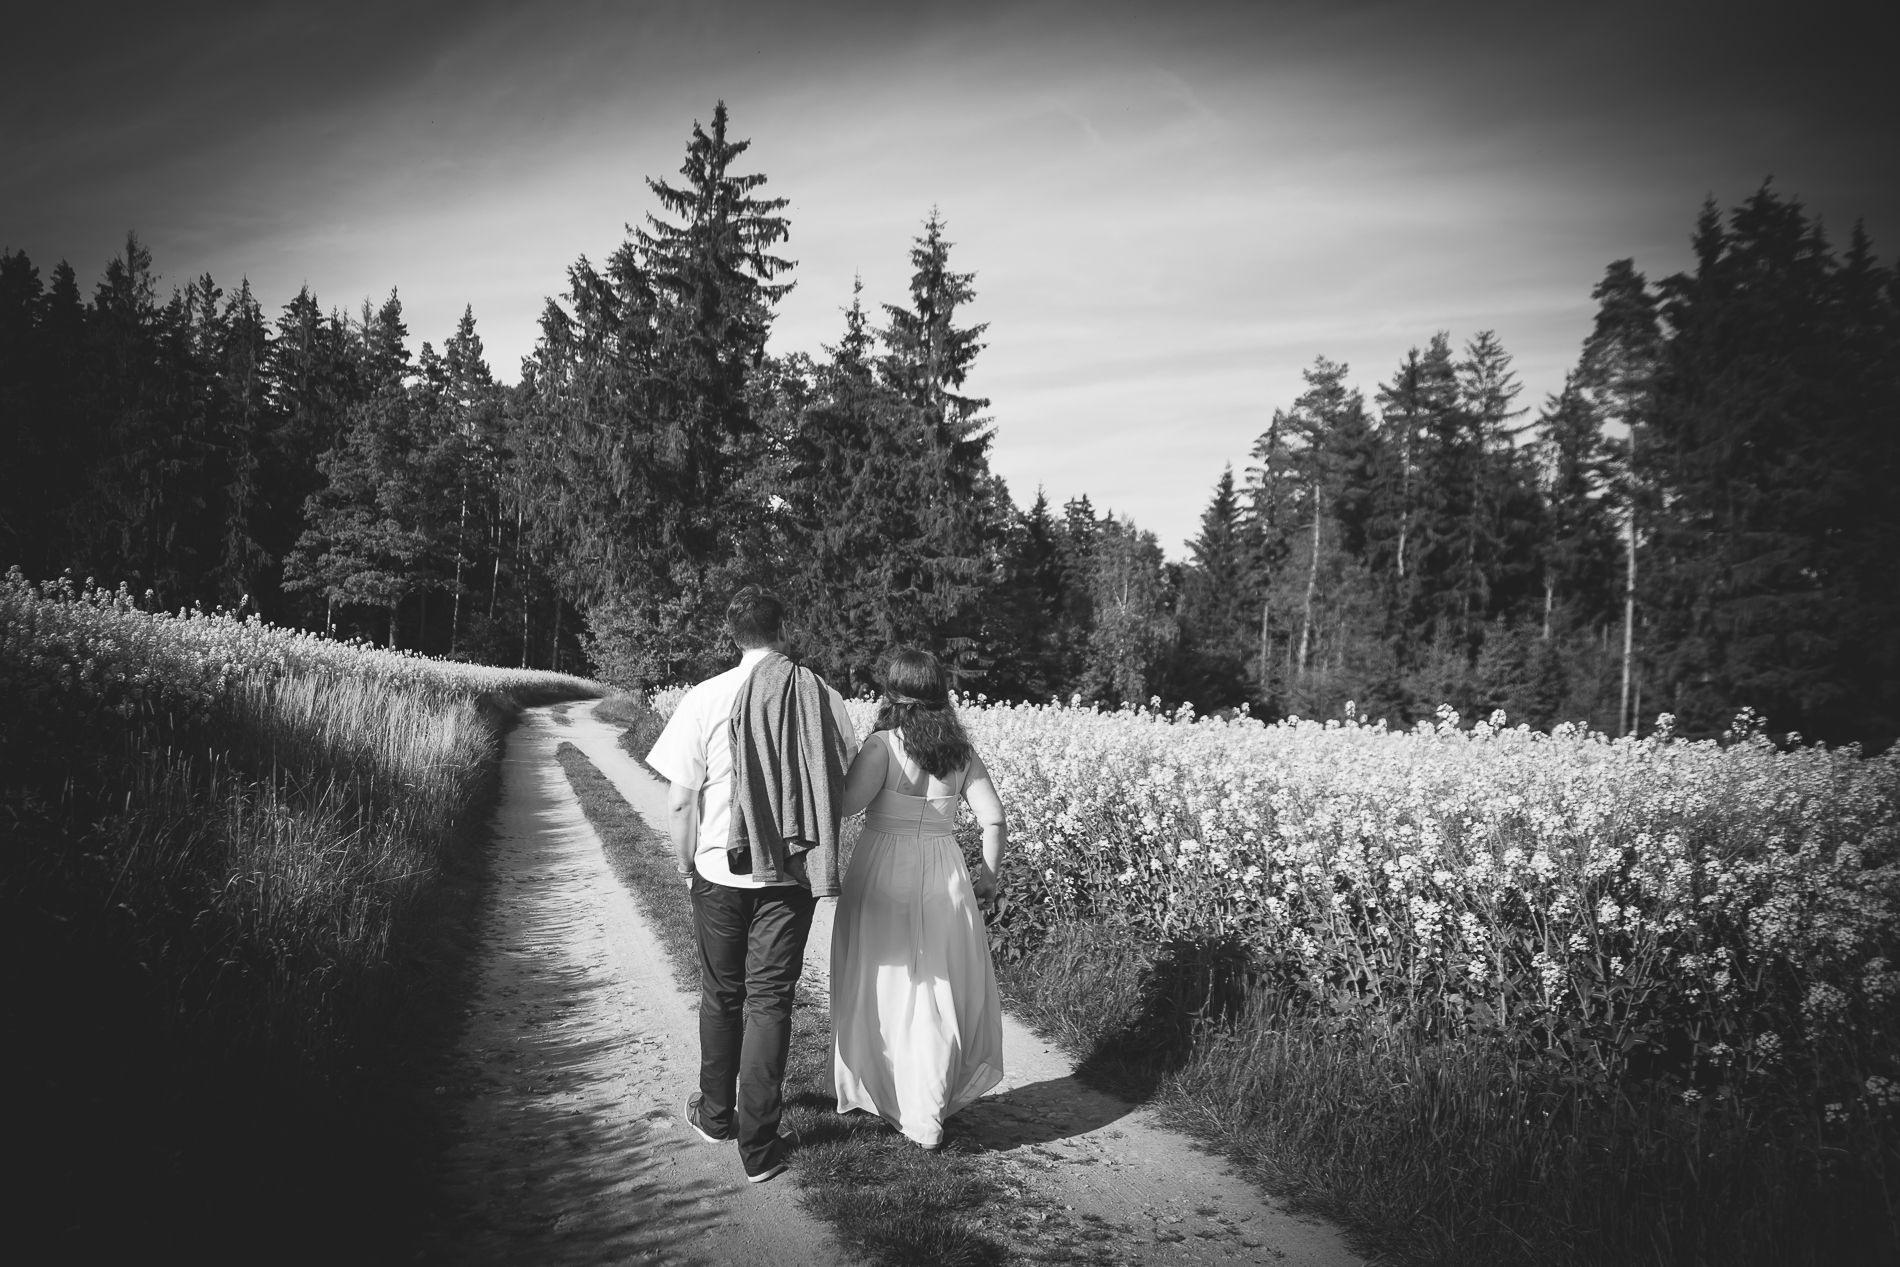 svatební fotografie Soňa & Lukáš, svatba v lese, boho, přírodní svatba - svatební fotograf Studio Beautyfoto